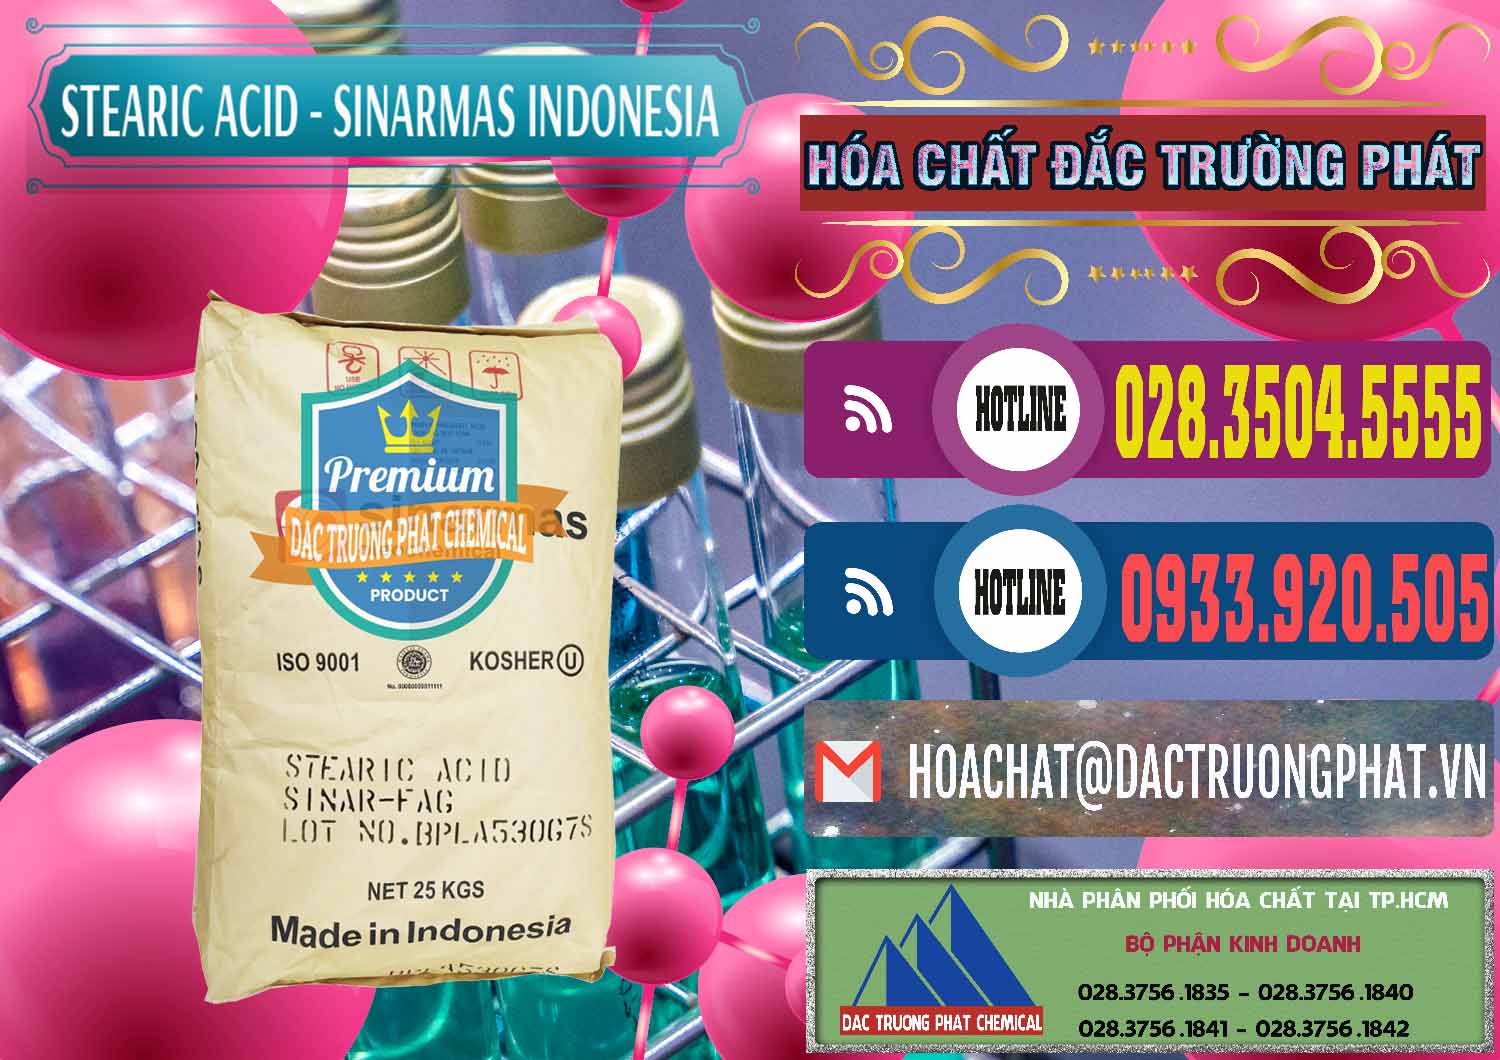 Cty bán ( cung ứng ) Axit Stearic - Stearic Acid Sinarmas Indonesia - 0389 - Nơi chuyên cung ứng và phân phối hóa chất tại TP.HCM - muabanhoachat.com.vn